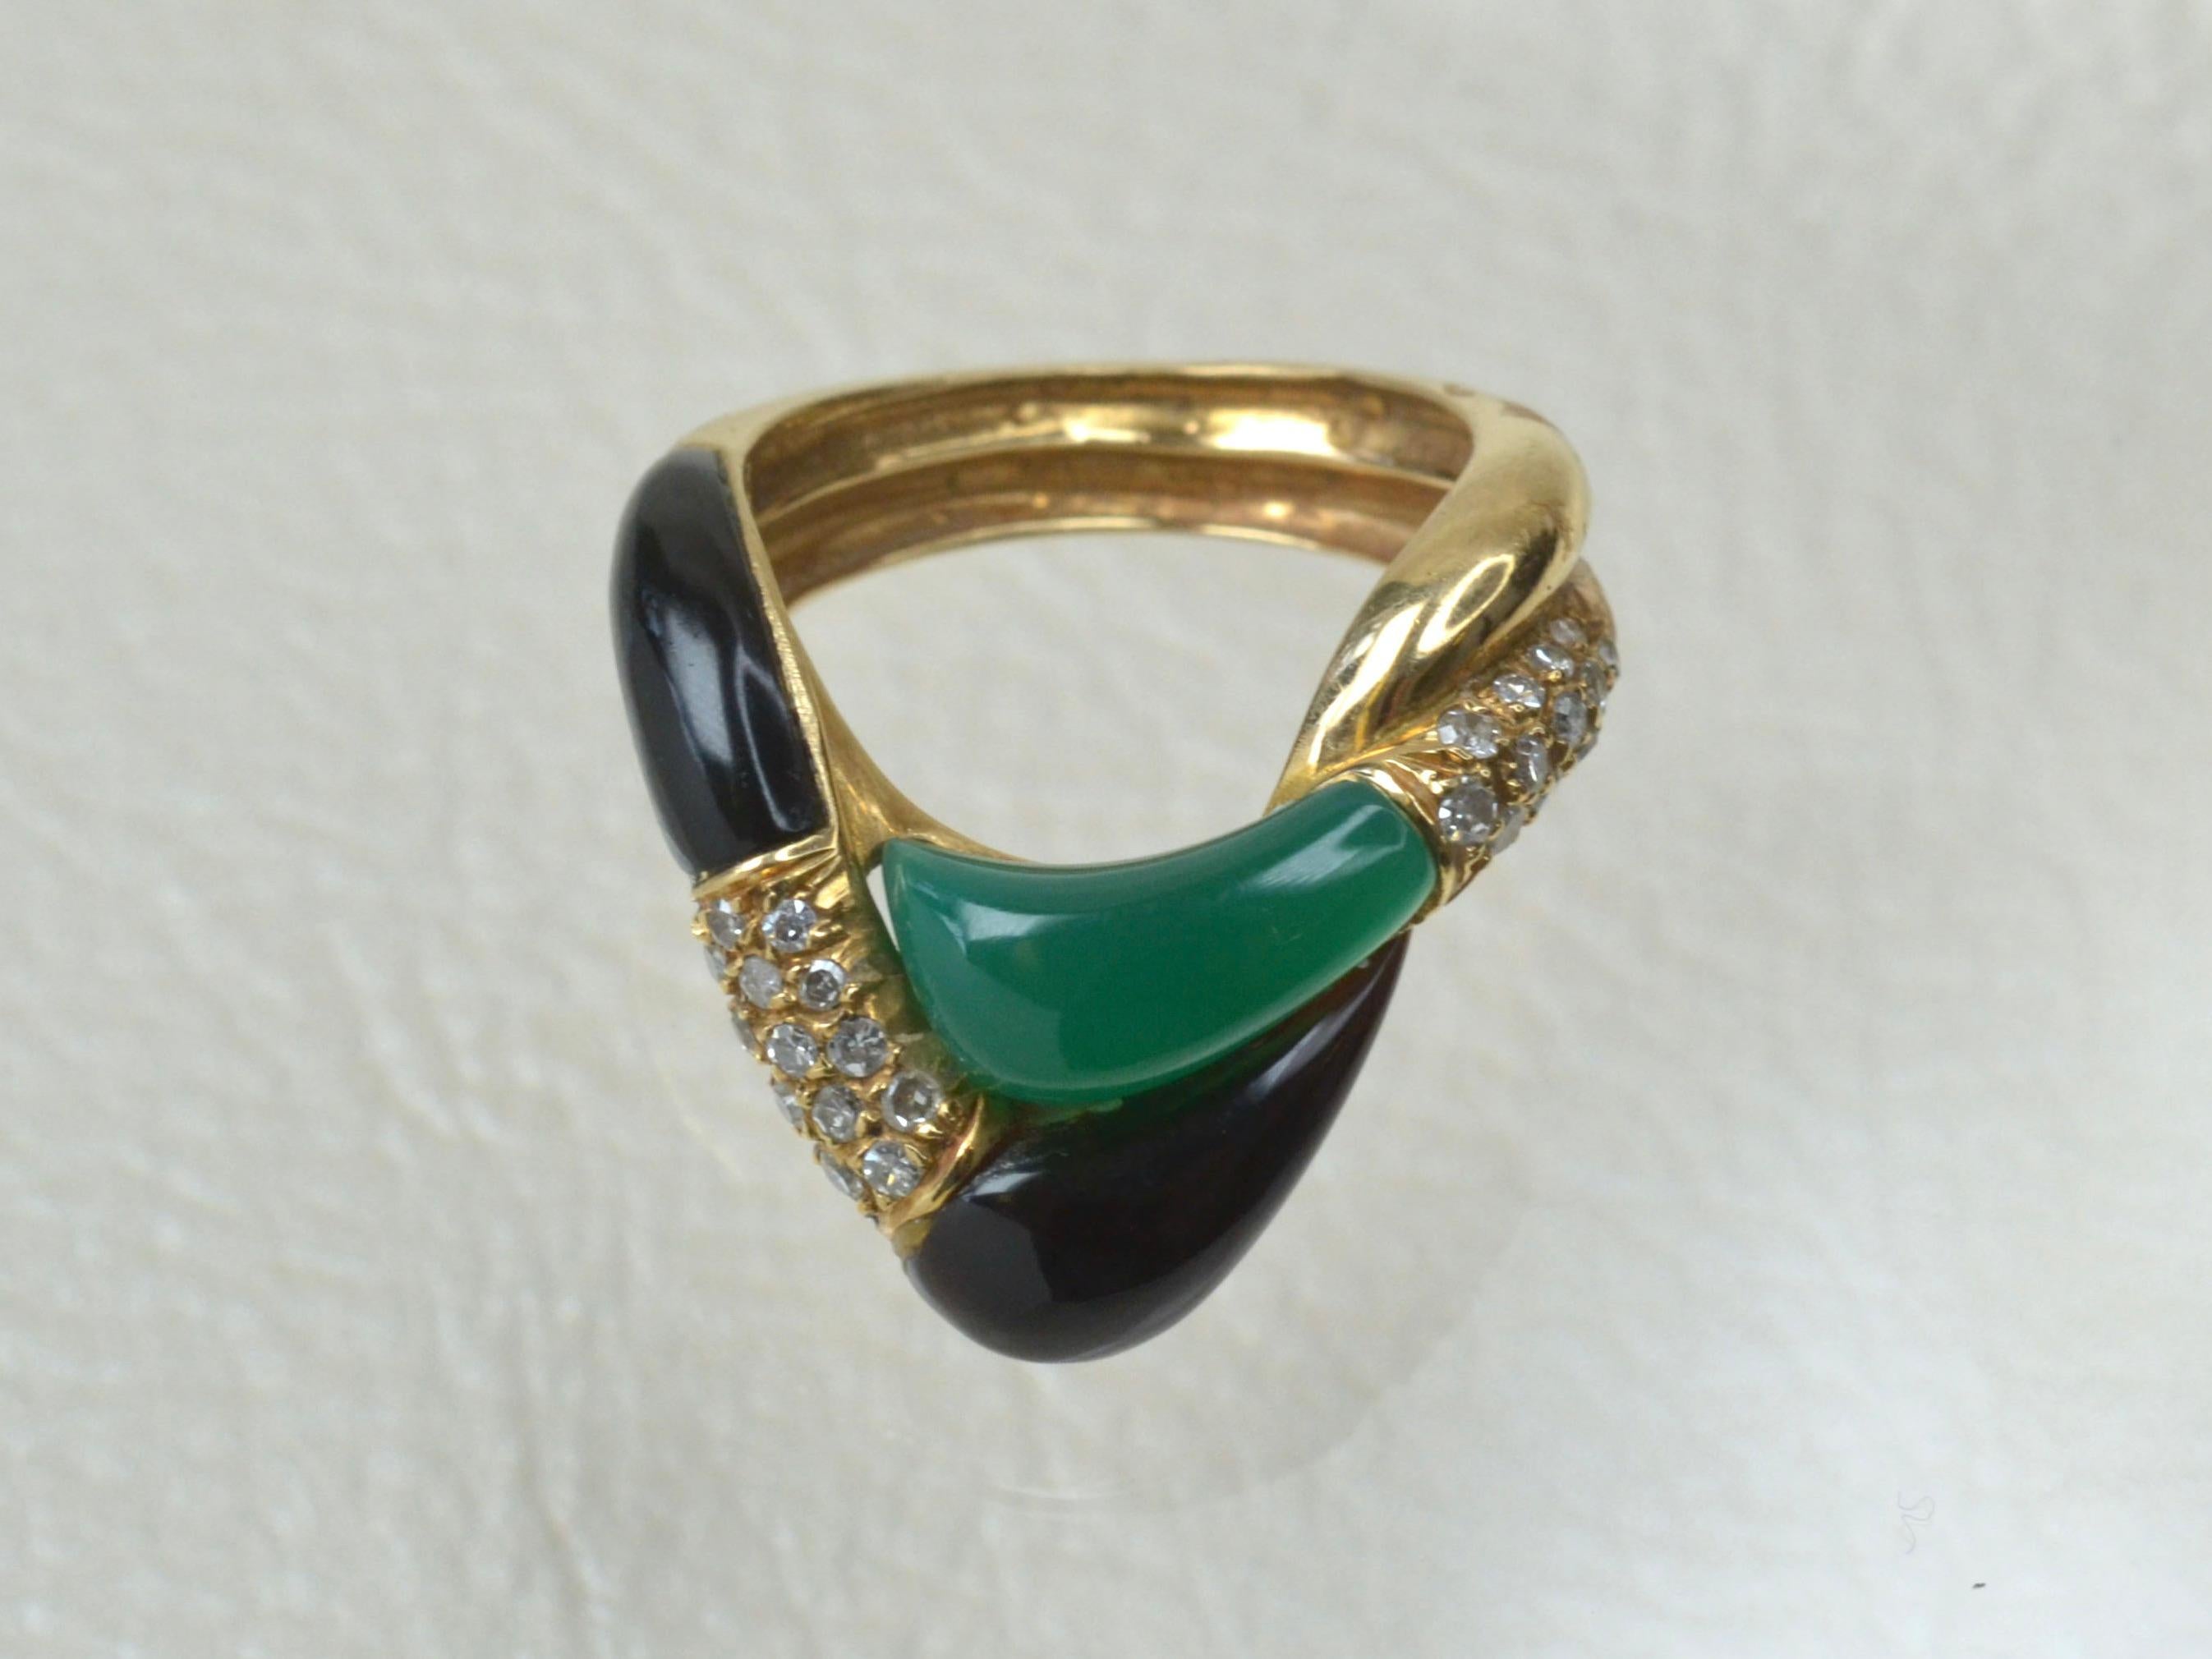 Dieses ineinander greifende Design aus den 1970er Jahren besteht aus zwei glatten Stücken Blanko-Onyx und einem glatten, geschliffenen Stück leuchtend grüner Jade. Insgesamt 26 weiße Diamanten unterstreichen die tiefen Farben. 
Der Ring hat ein